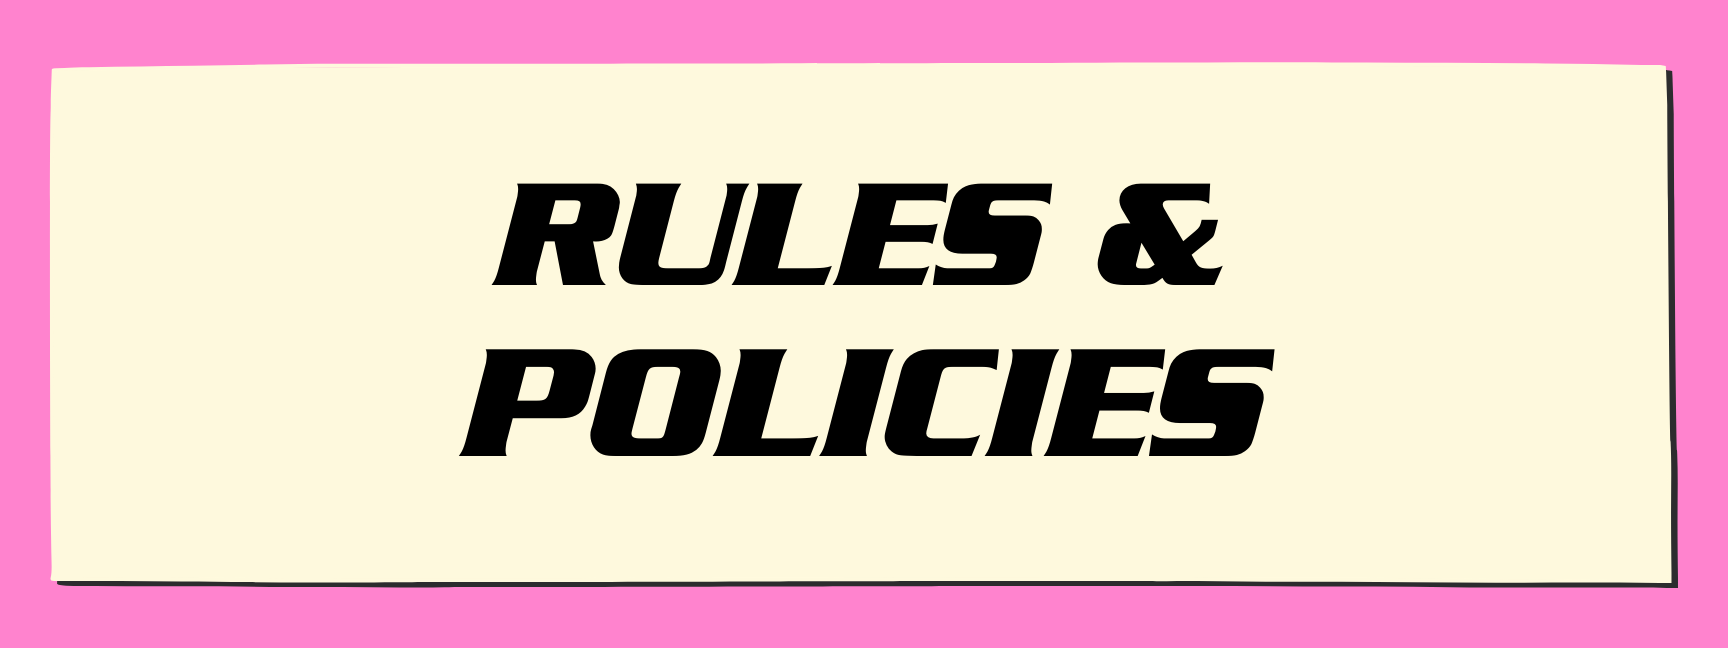 RULES & POLICIES WEBSITE